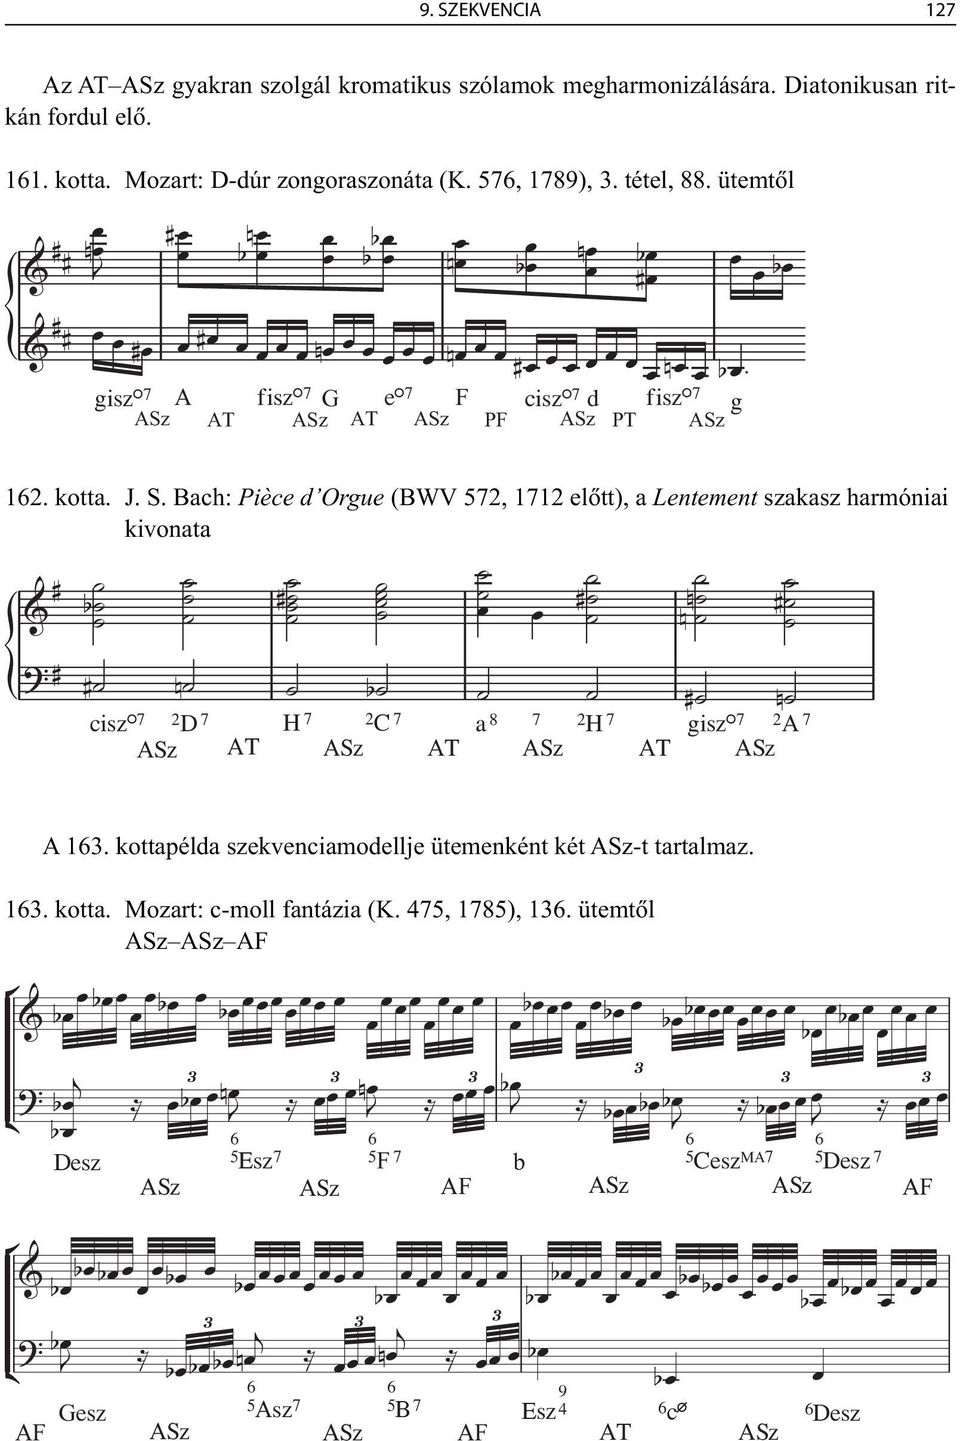 Bach: Pièce d Orgue (BWV 572, 1712 elõtt), a Lentement szakasz harmóniai kivonata ciszº7 2D 7 ASz AT H 7 2C 7 ASz AT a 8 ASz 7 2H 7 AT giszº7 ASz 2A 7 A 16.